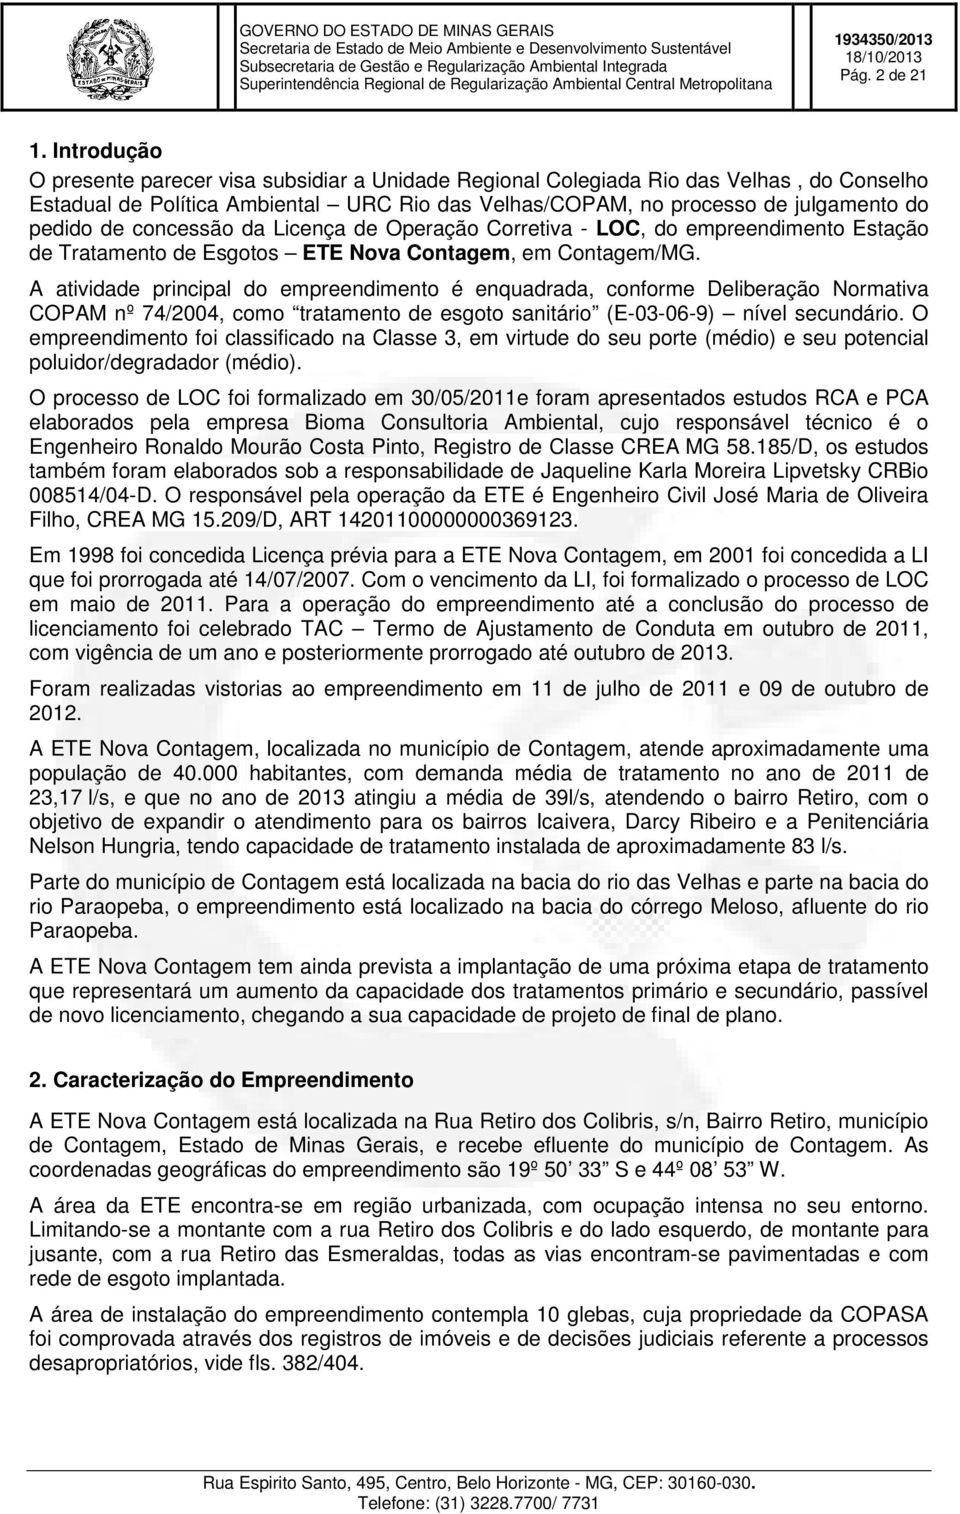 concessão da Licença de Operação Corretiva - LOC, do empreendimento Estação de Tratamento de Esgotos ETE Nova Contagem, em Contagem/MG.